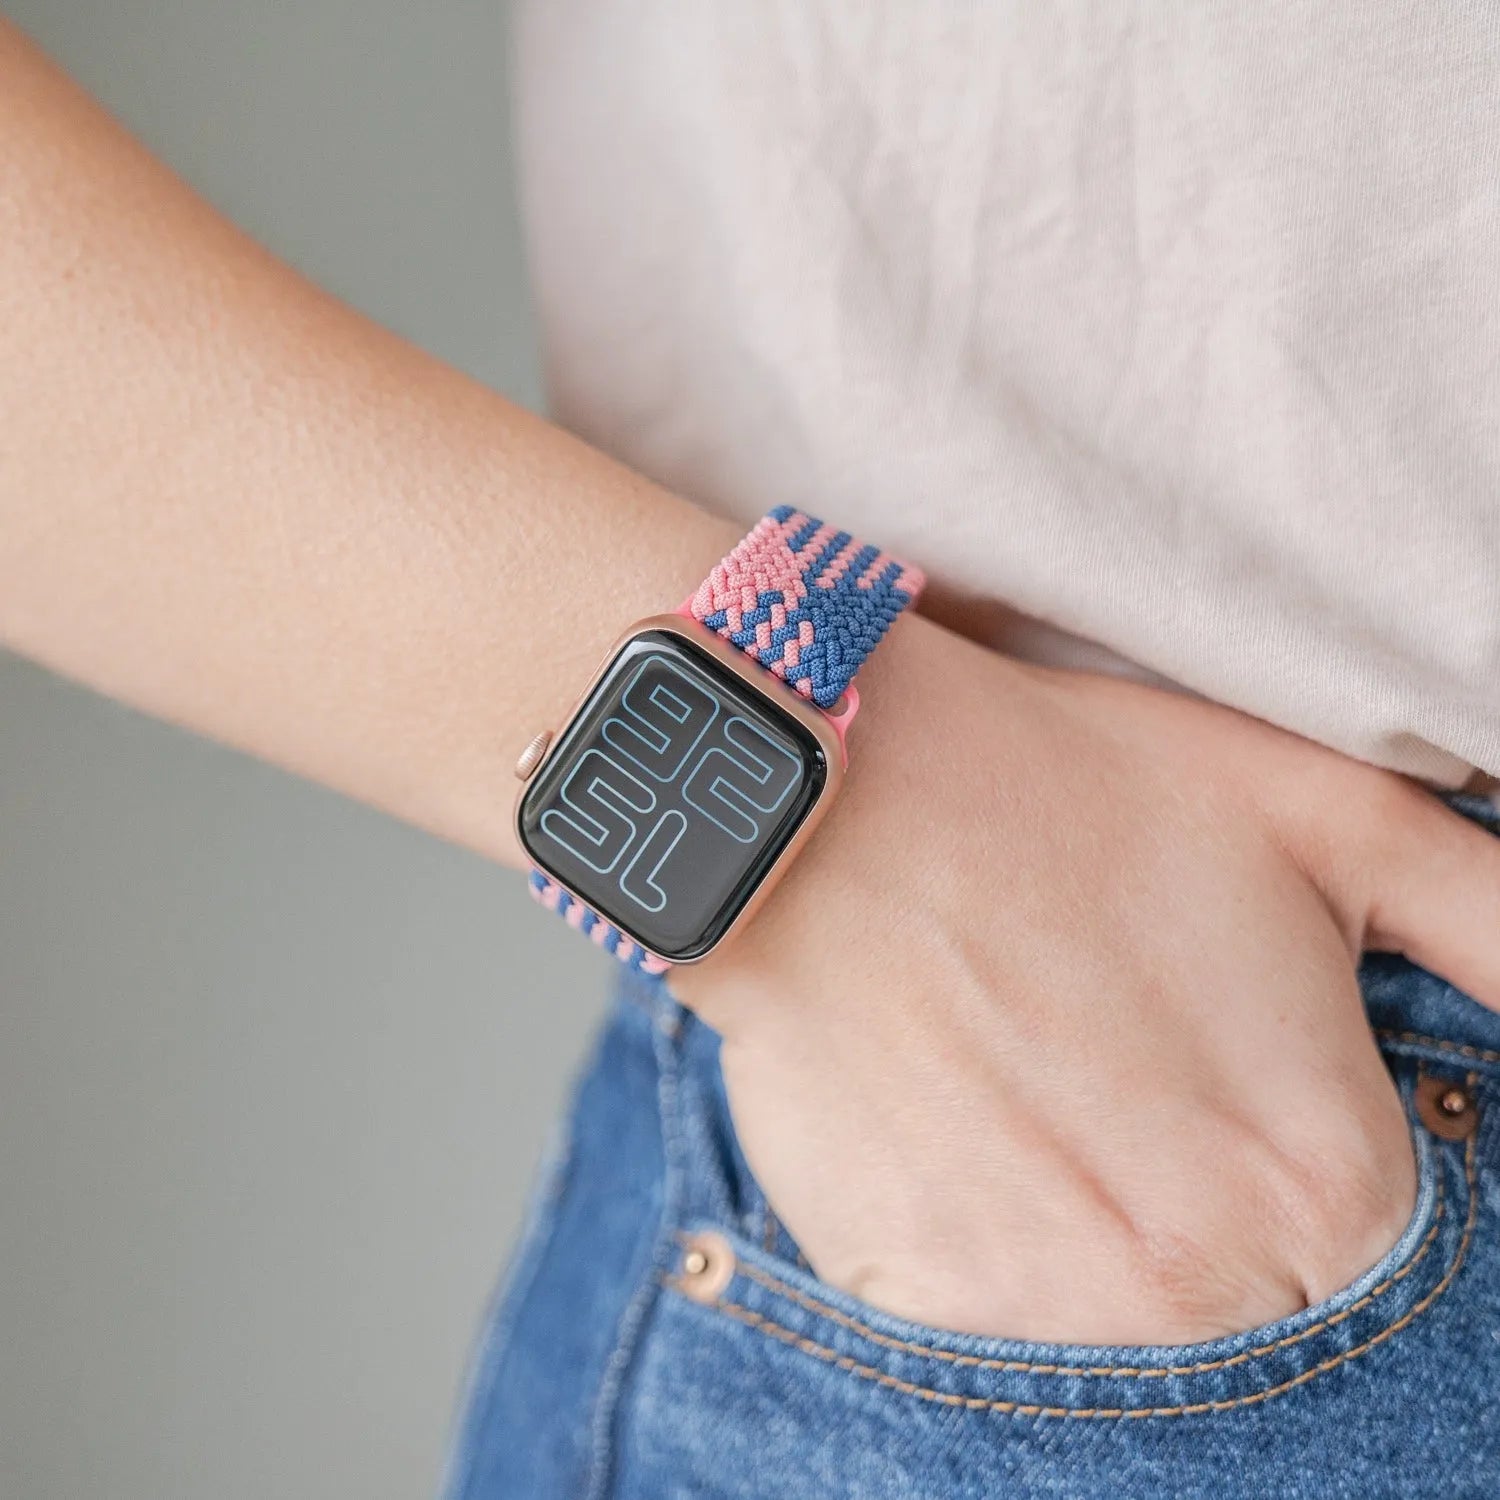 Adjustable Apple Watch Braided Loop#color_blue/pink